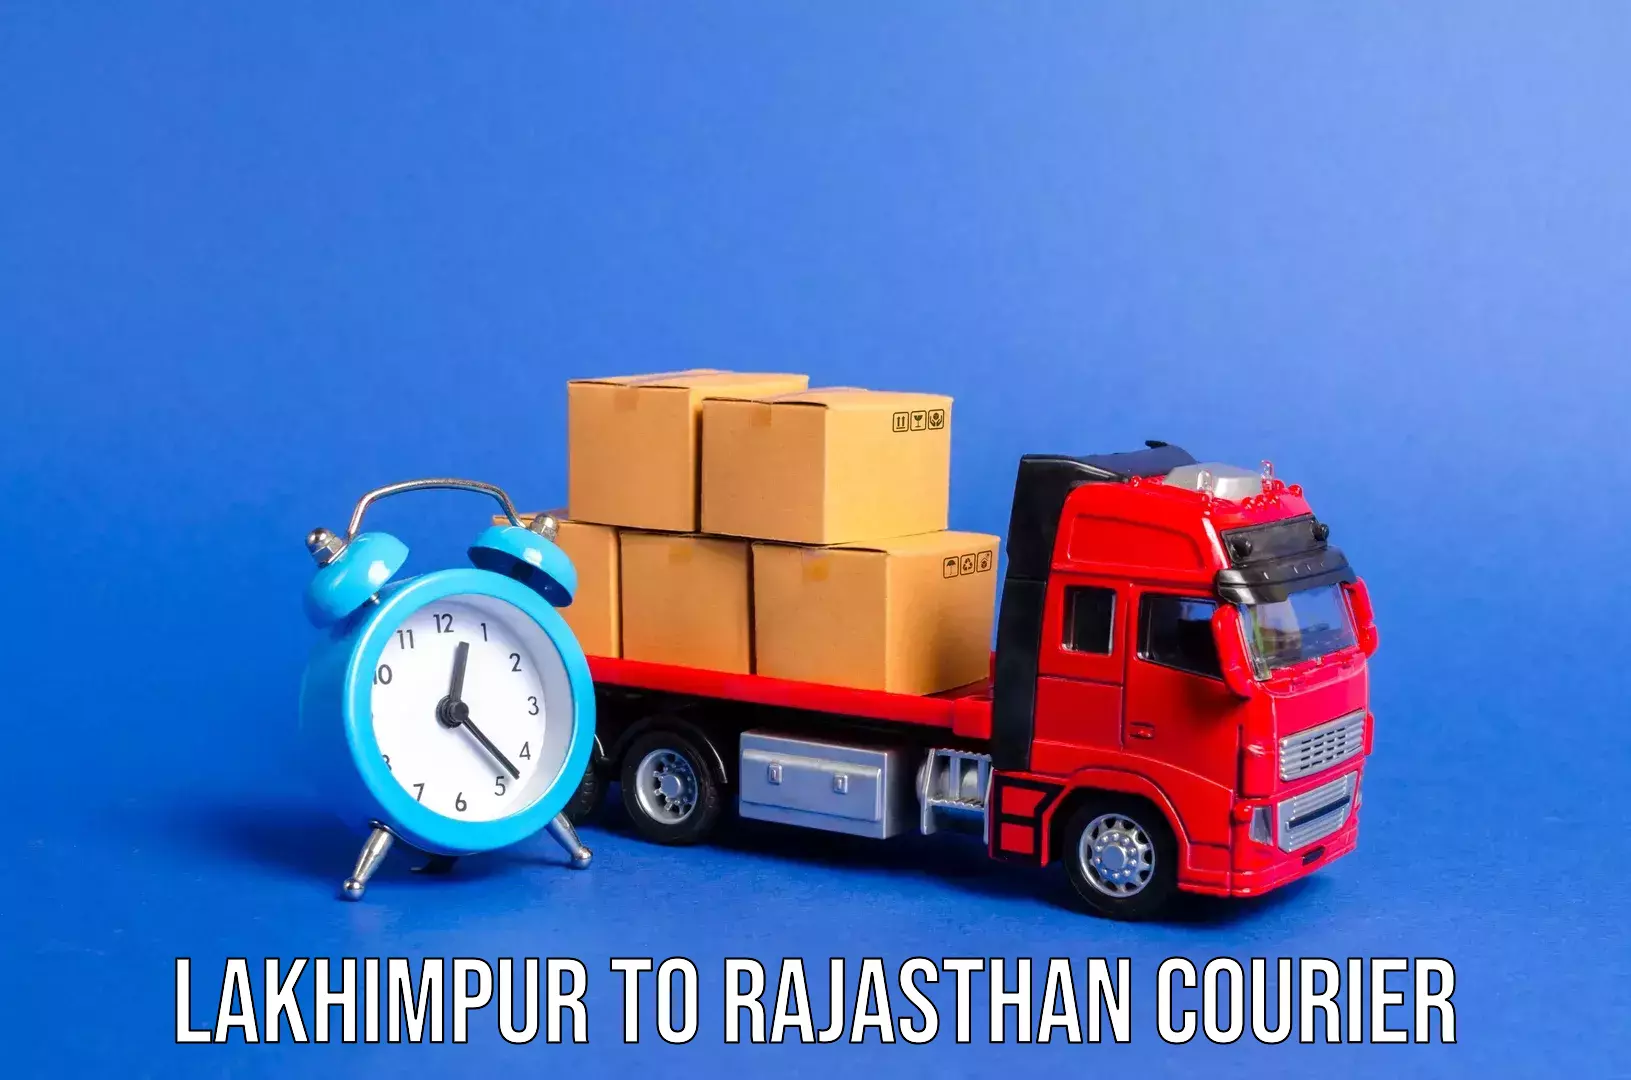 Baggage transport professionals Lakhimpur to Sardarshahr